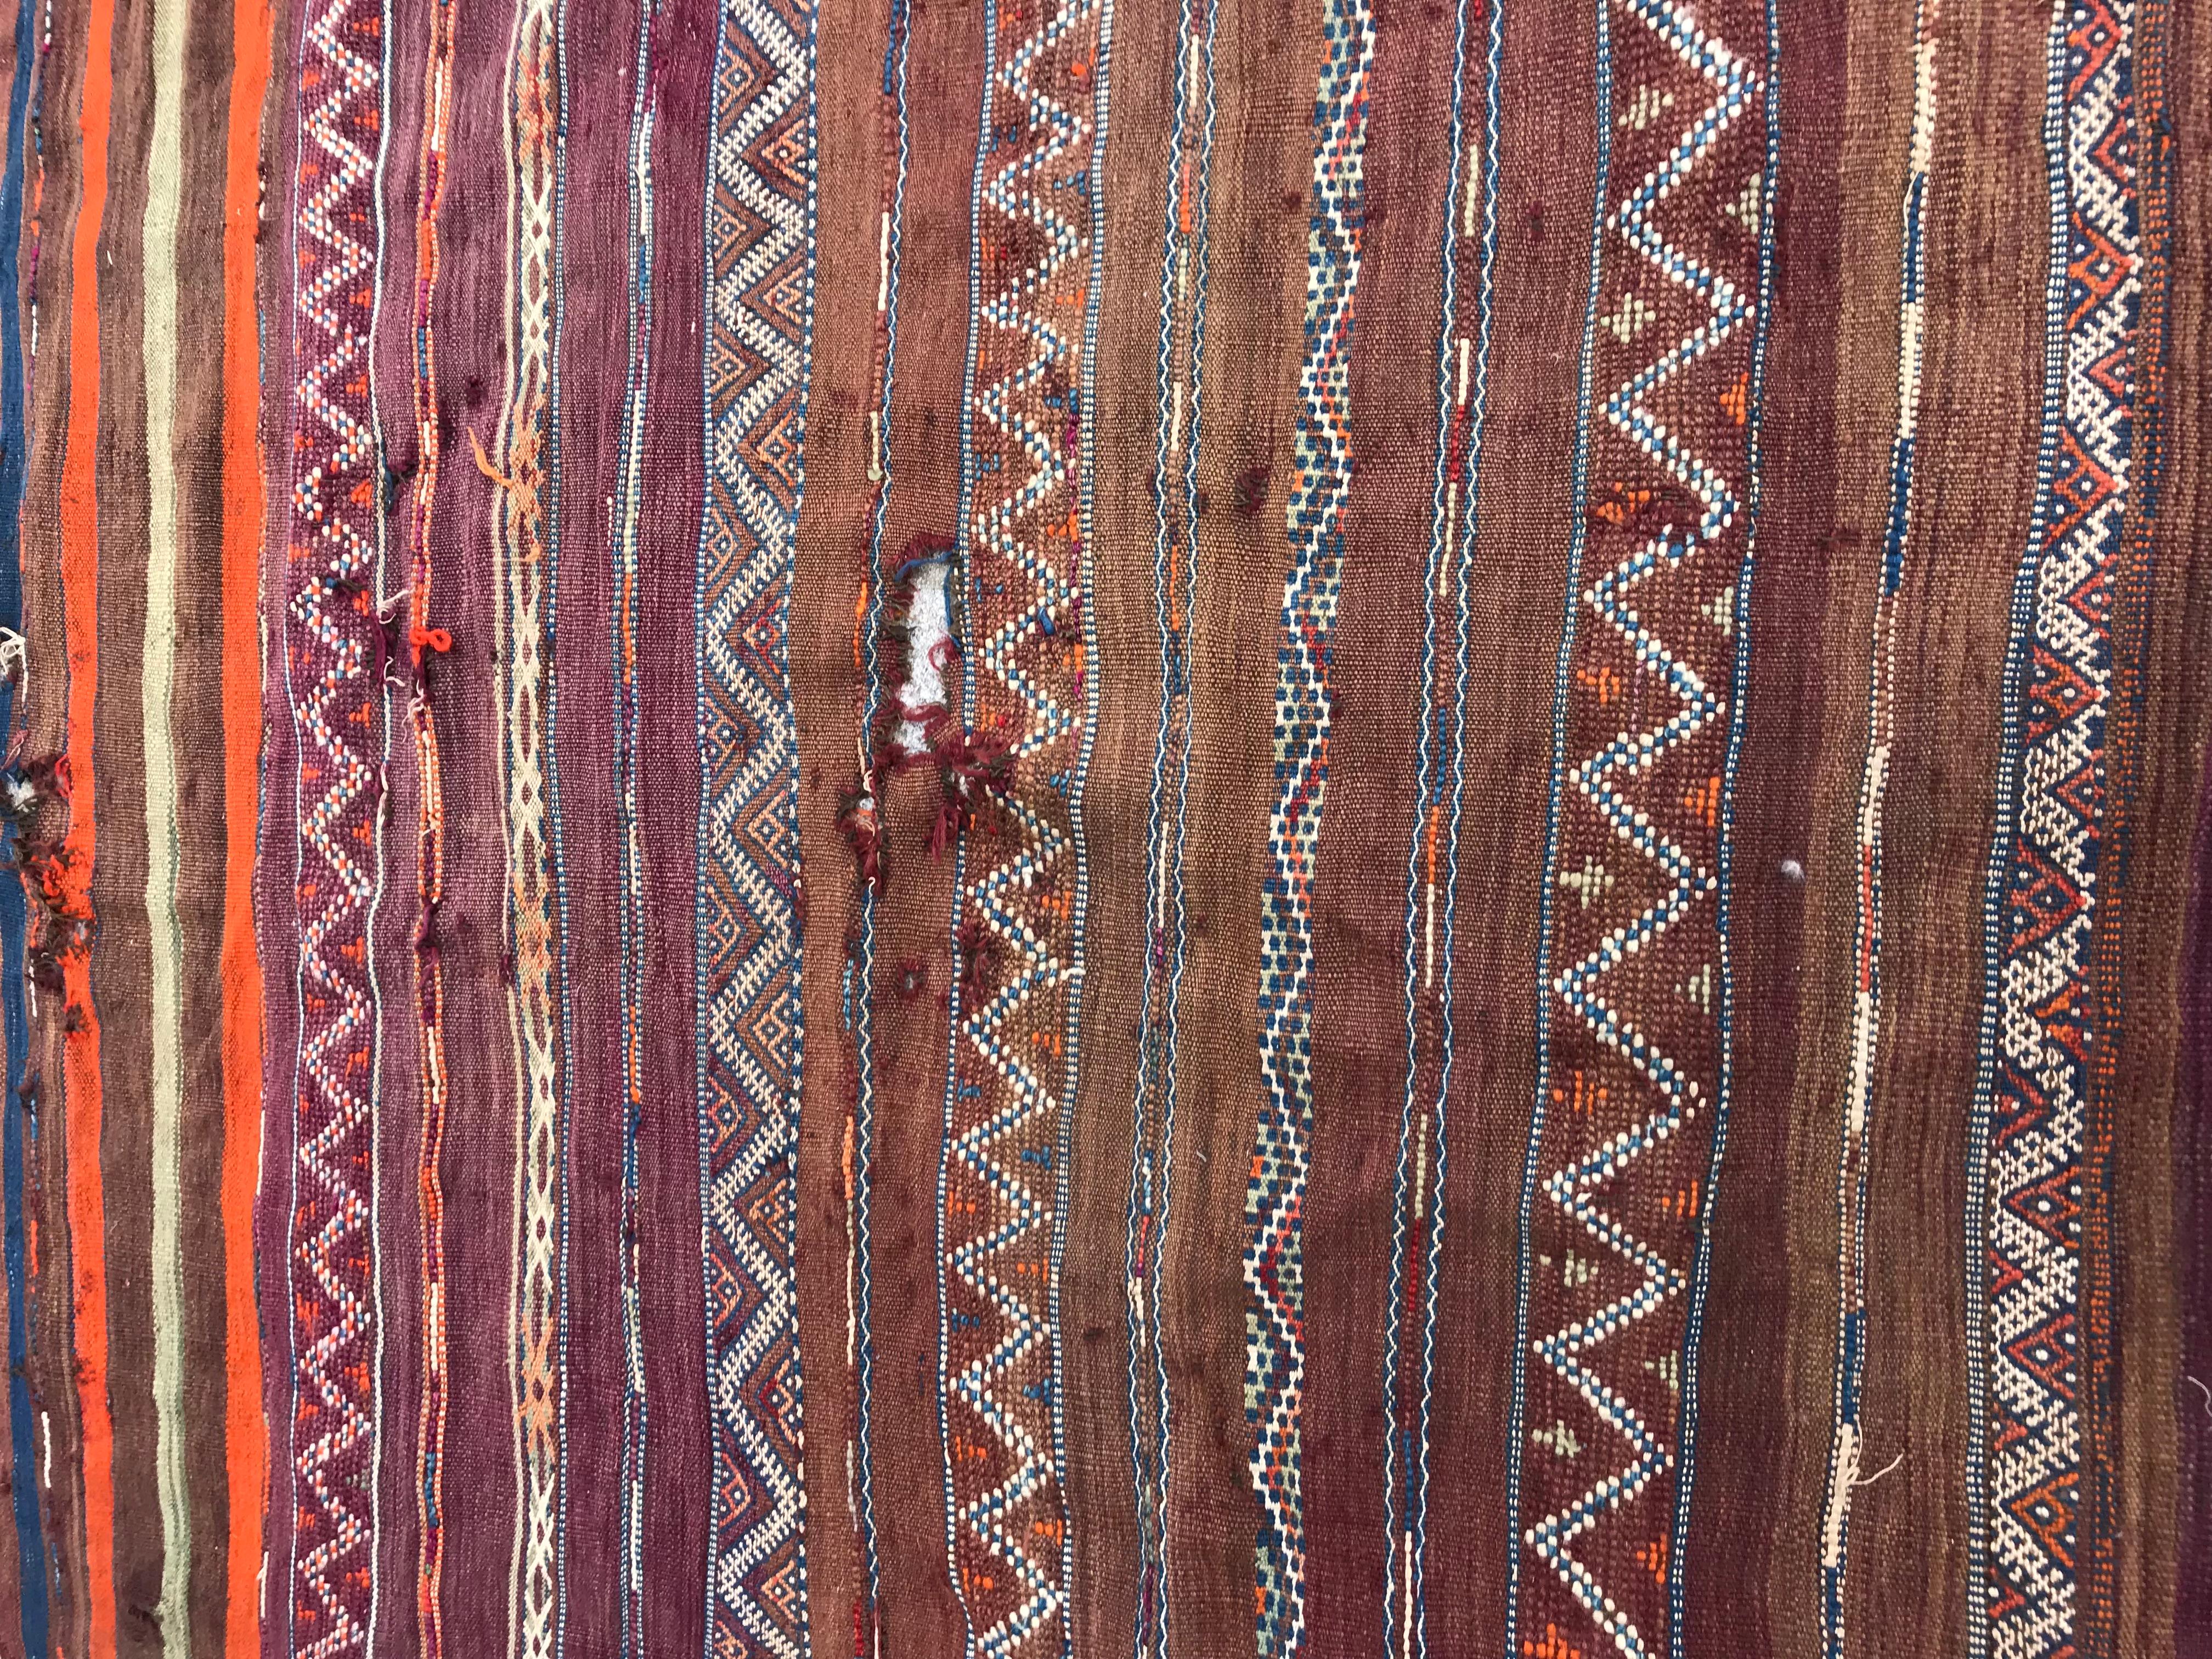 Kilim marocain tribal du début du 20e siècle avec un design tribal et géométrique et de belles couleurs avec du violet, de l'orange, du brun, du bleu et du vert, entièrement tissé à la main avec de la laine sur une base de laine.